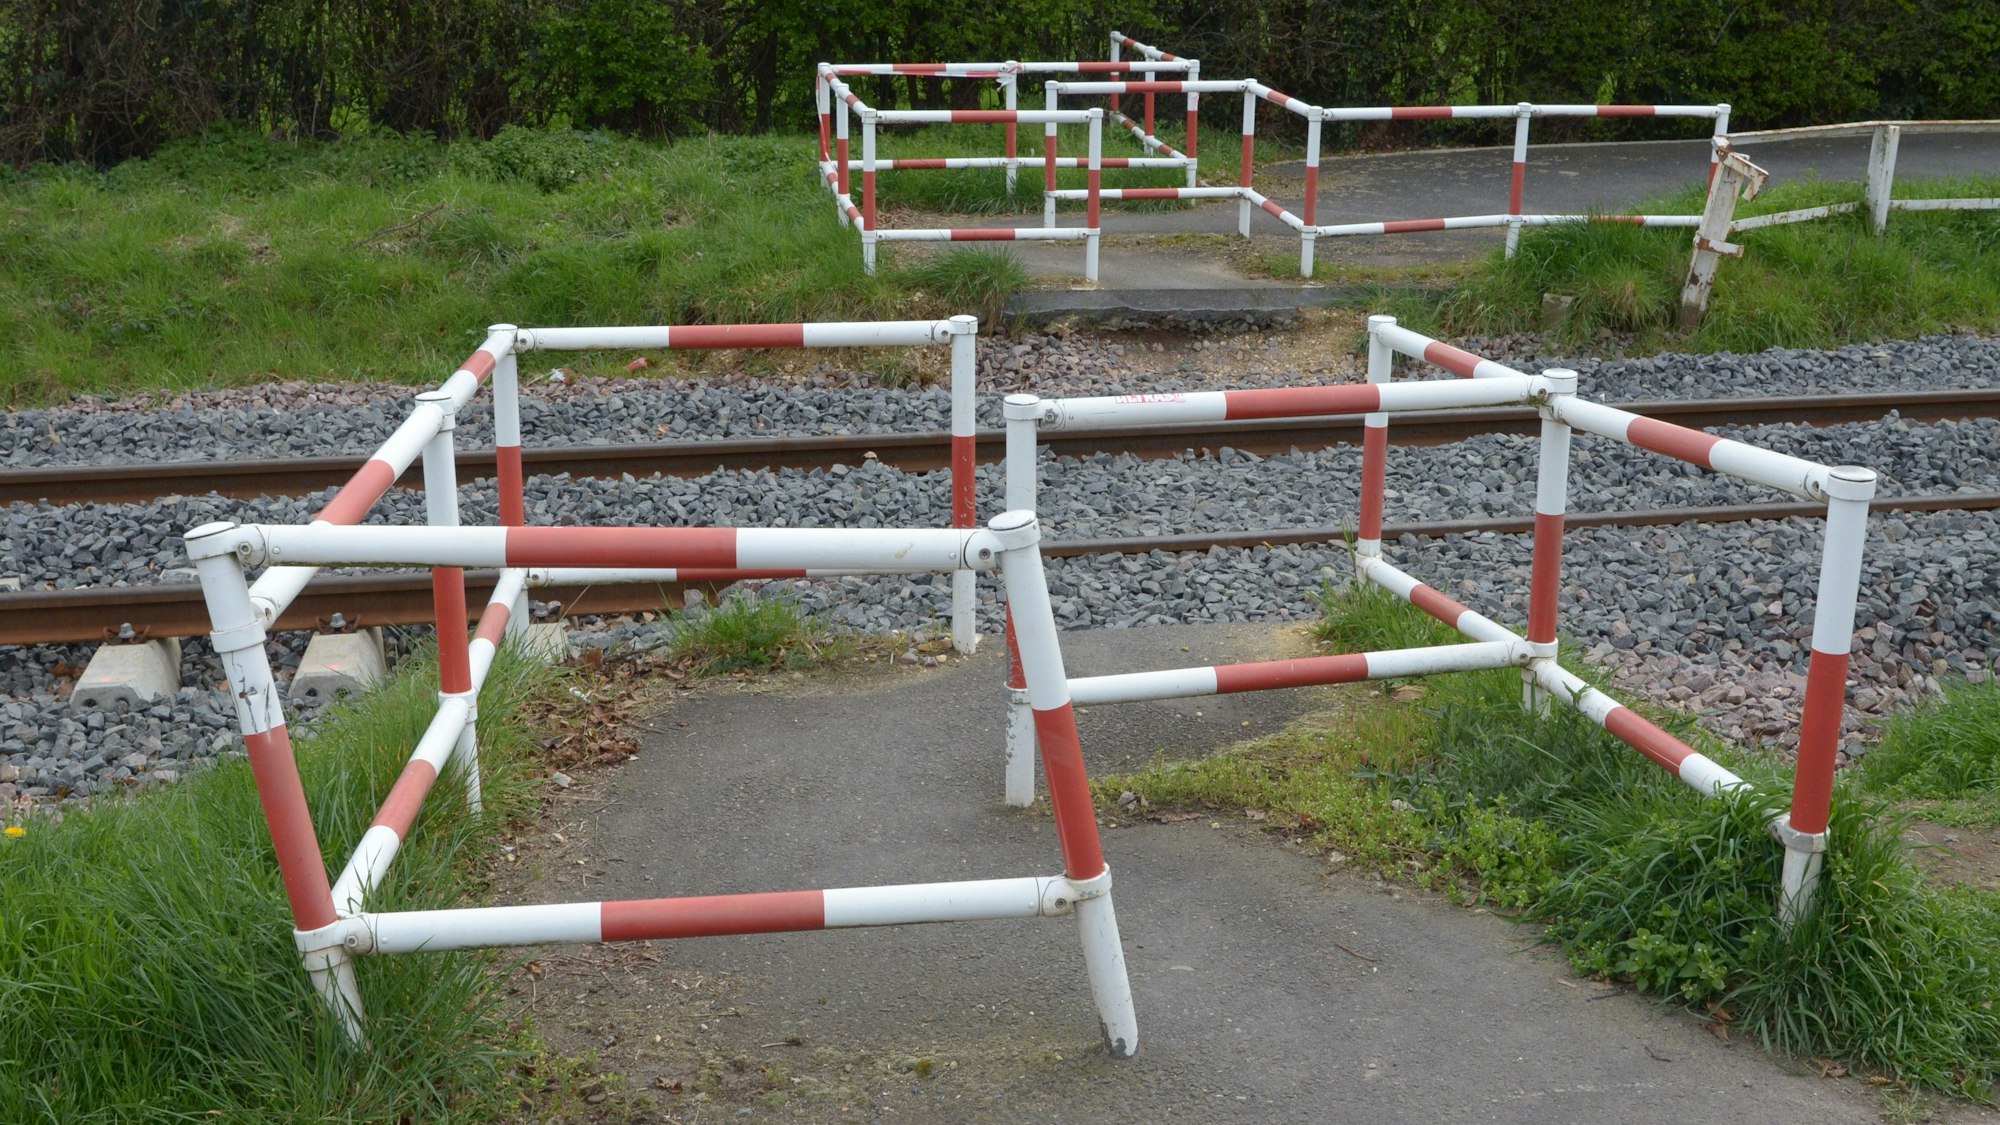 Das Bild zeigt rot-weiße Umlaufgitter auf beiden Seiten eines Bahnübergangs.